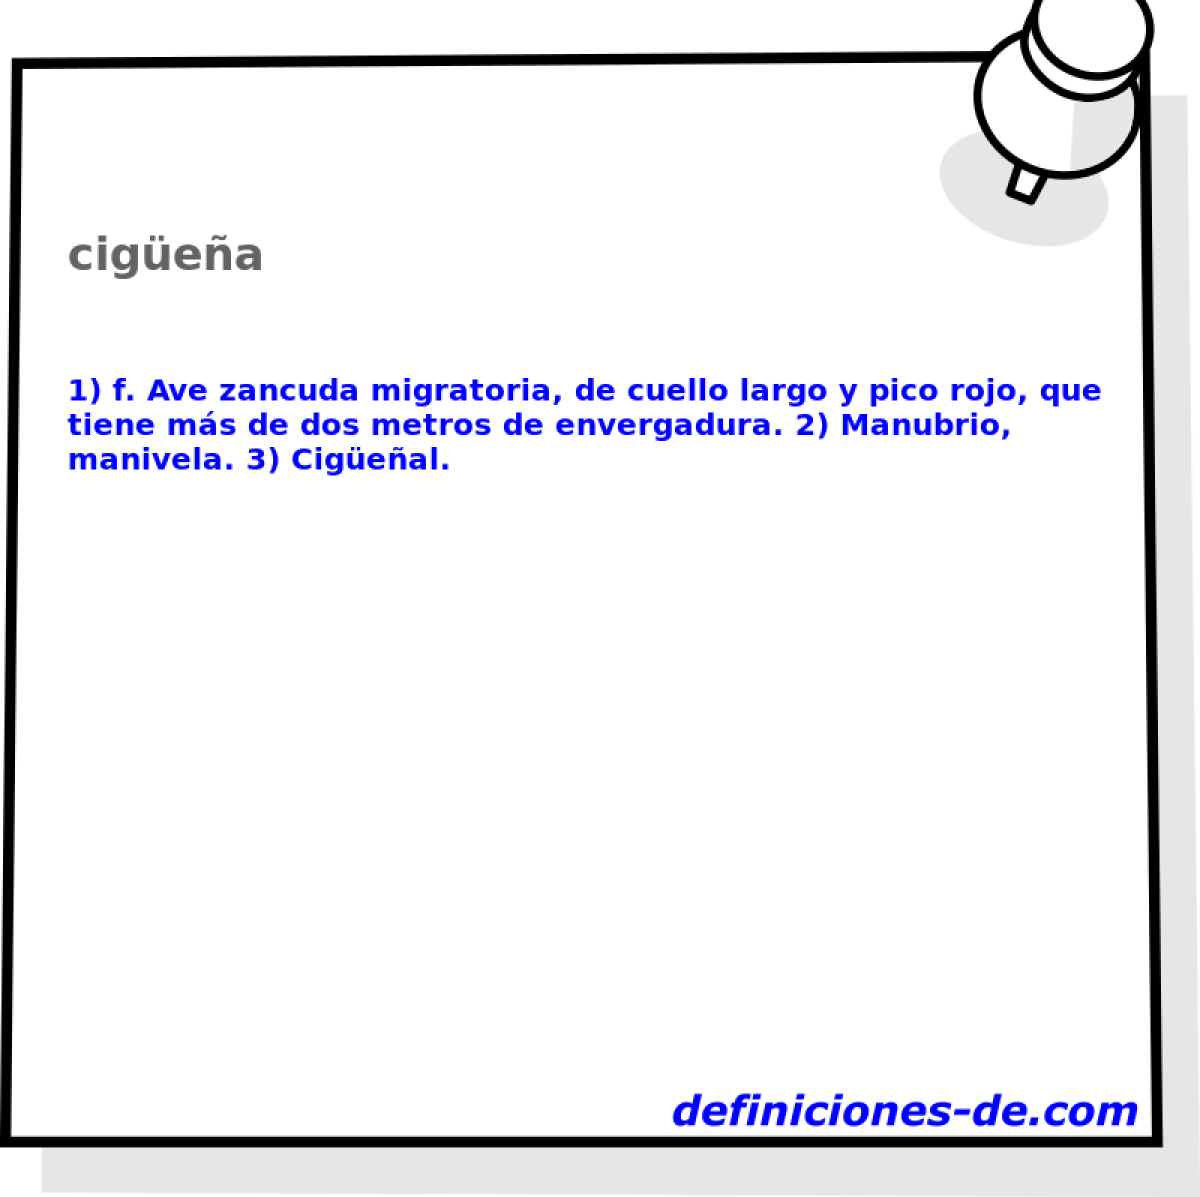 cigea 